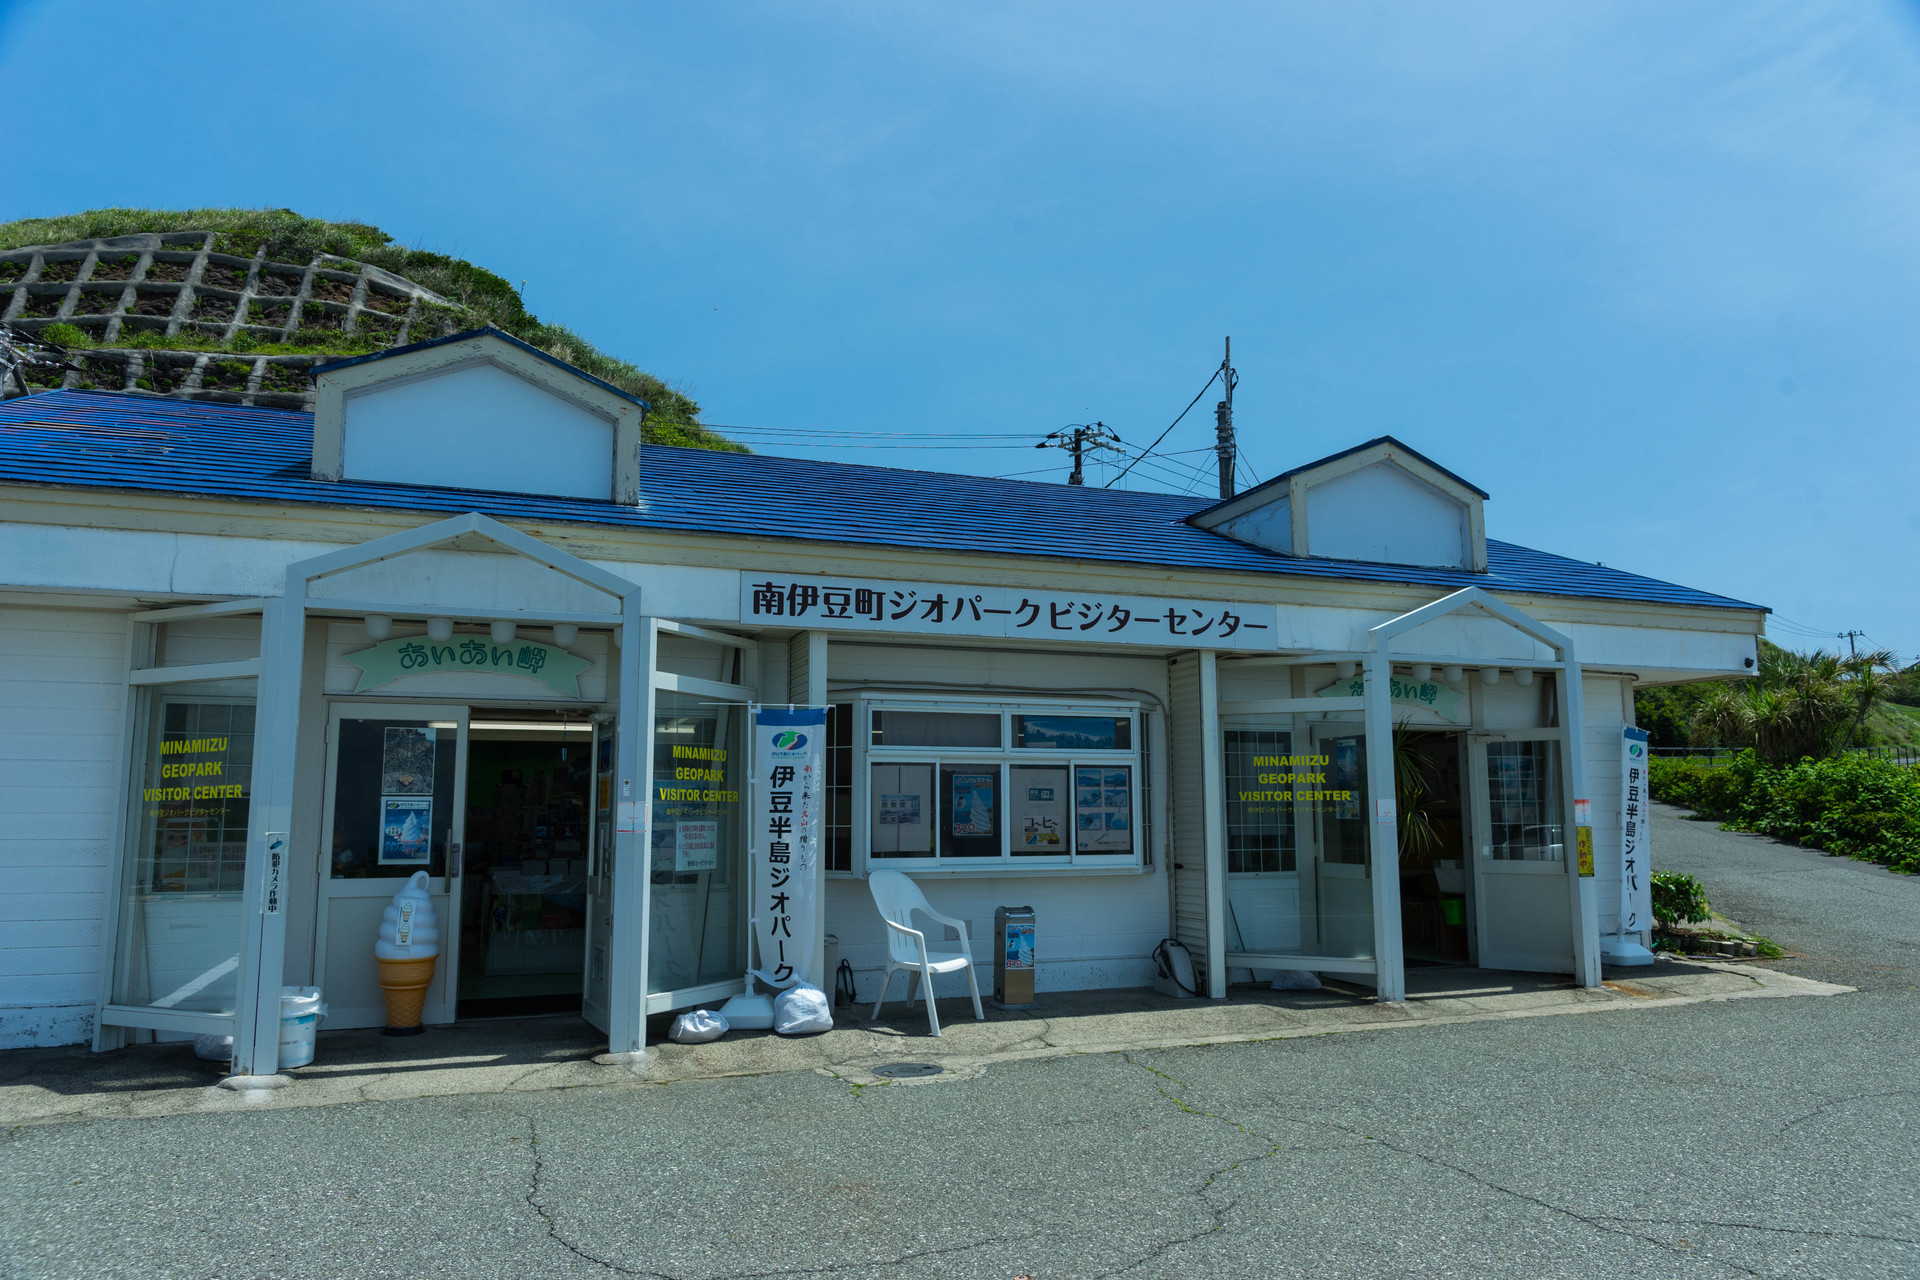 南伊豆の絶景スポット 奥石廊崎 あいあい岬 で風景写真を撮る ブログ